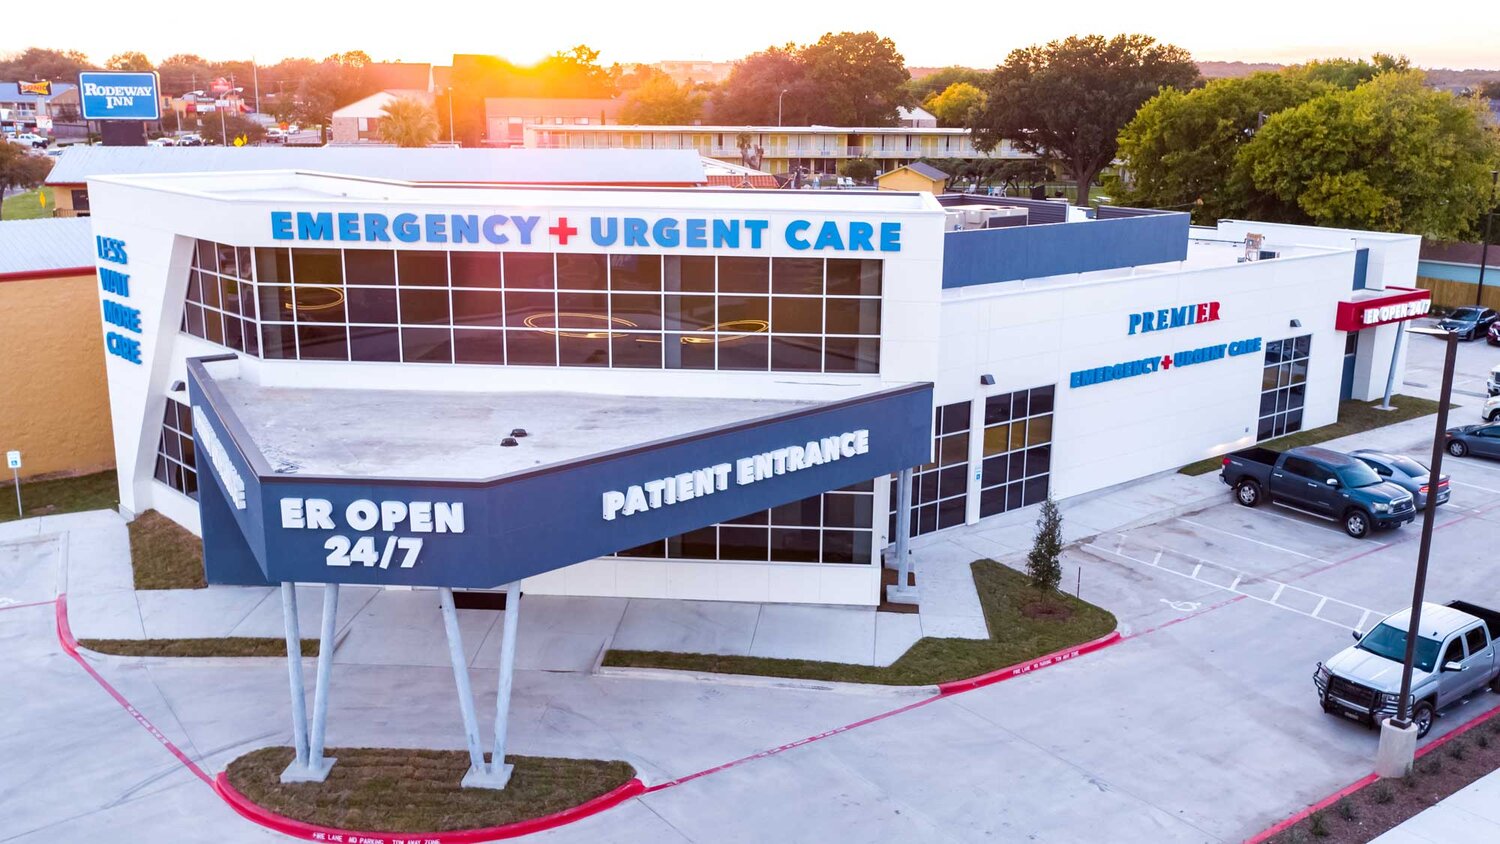 Premier Er & Urgent Care Waco Tricheenlight